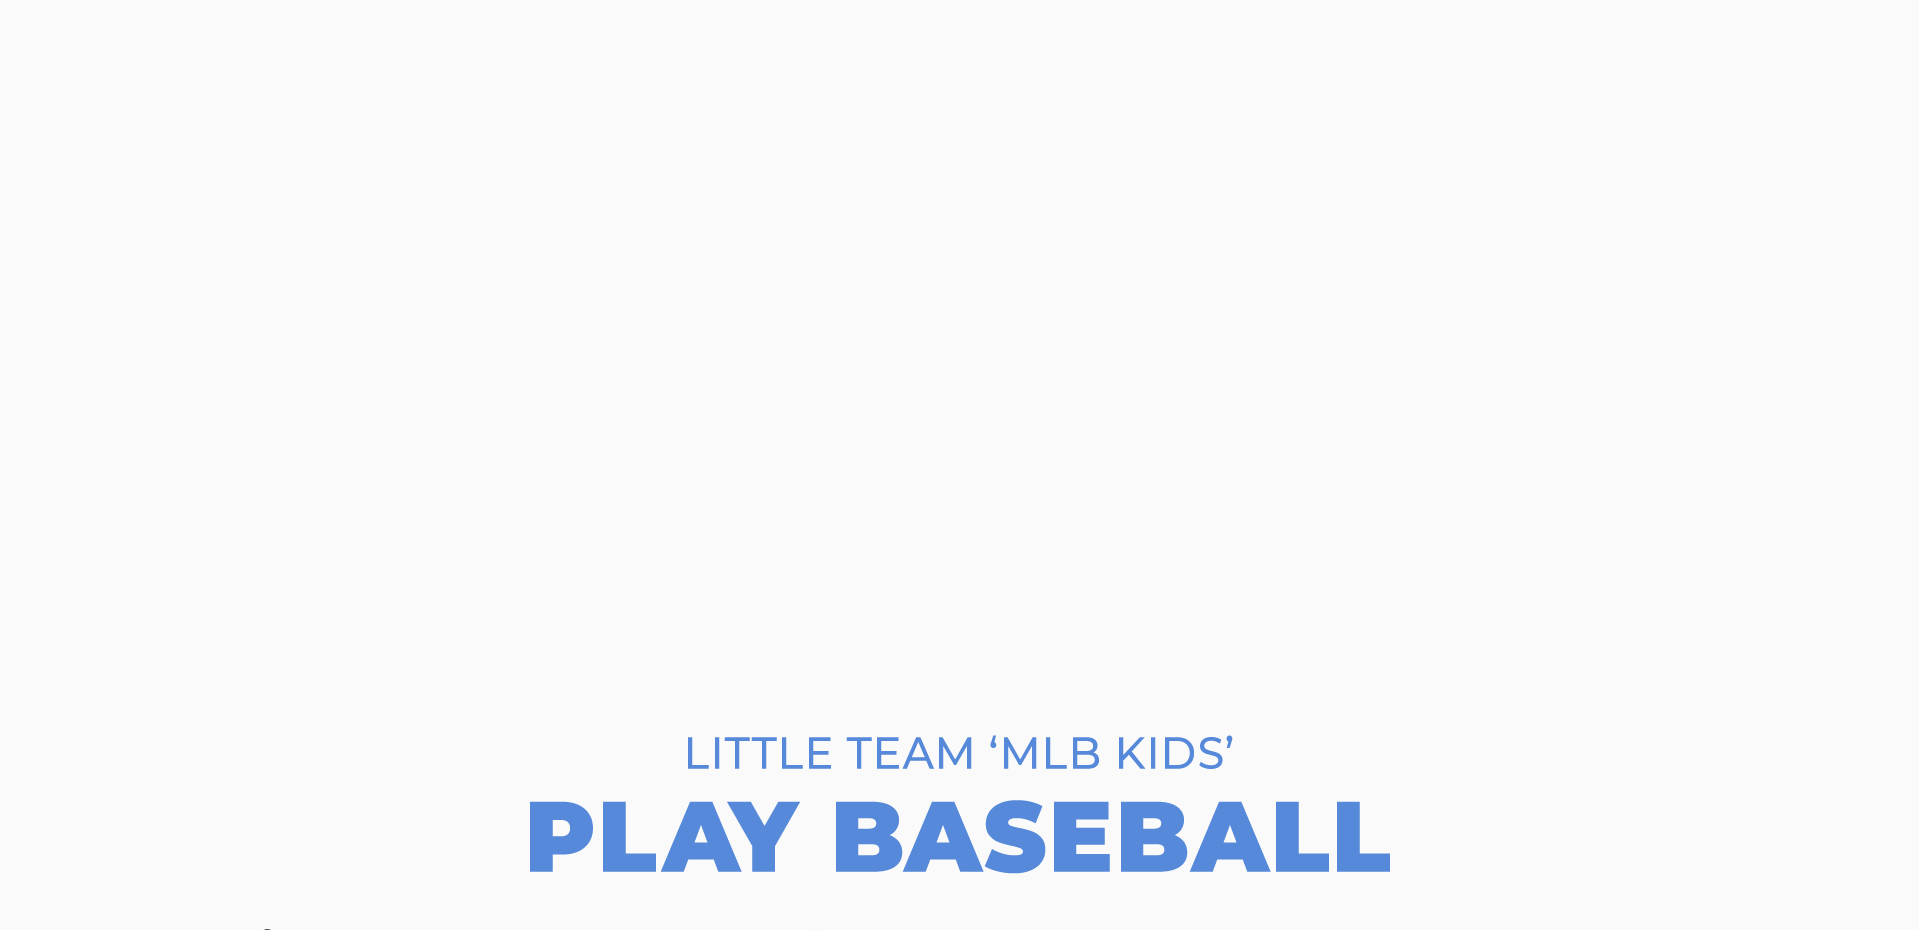 LITTLE TEAM ‘MLB KIDS’ PLAY BASEBALL